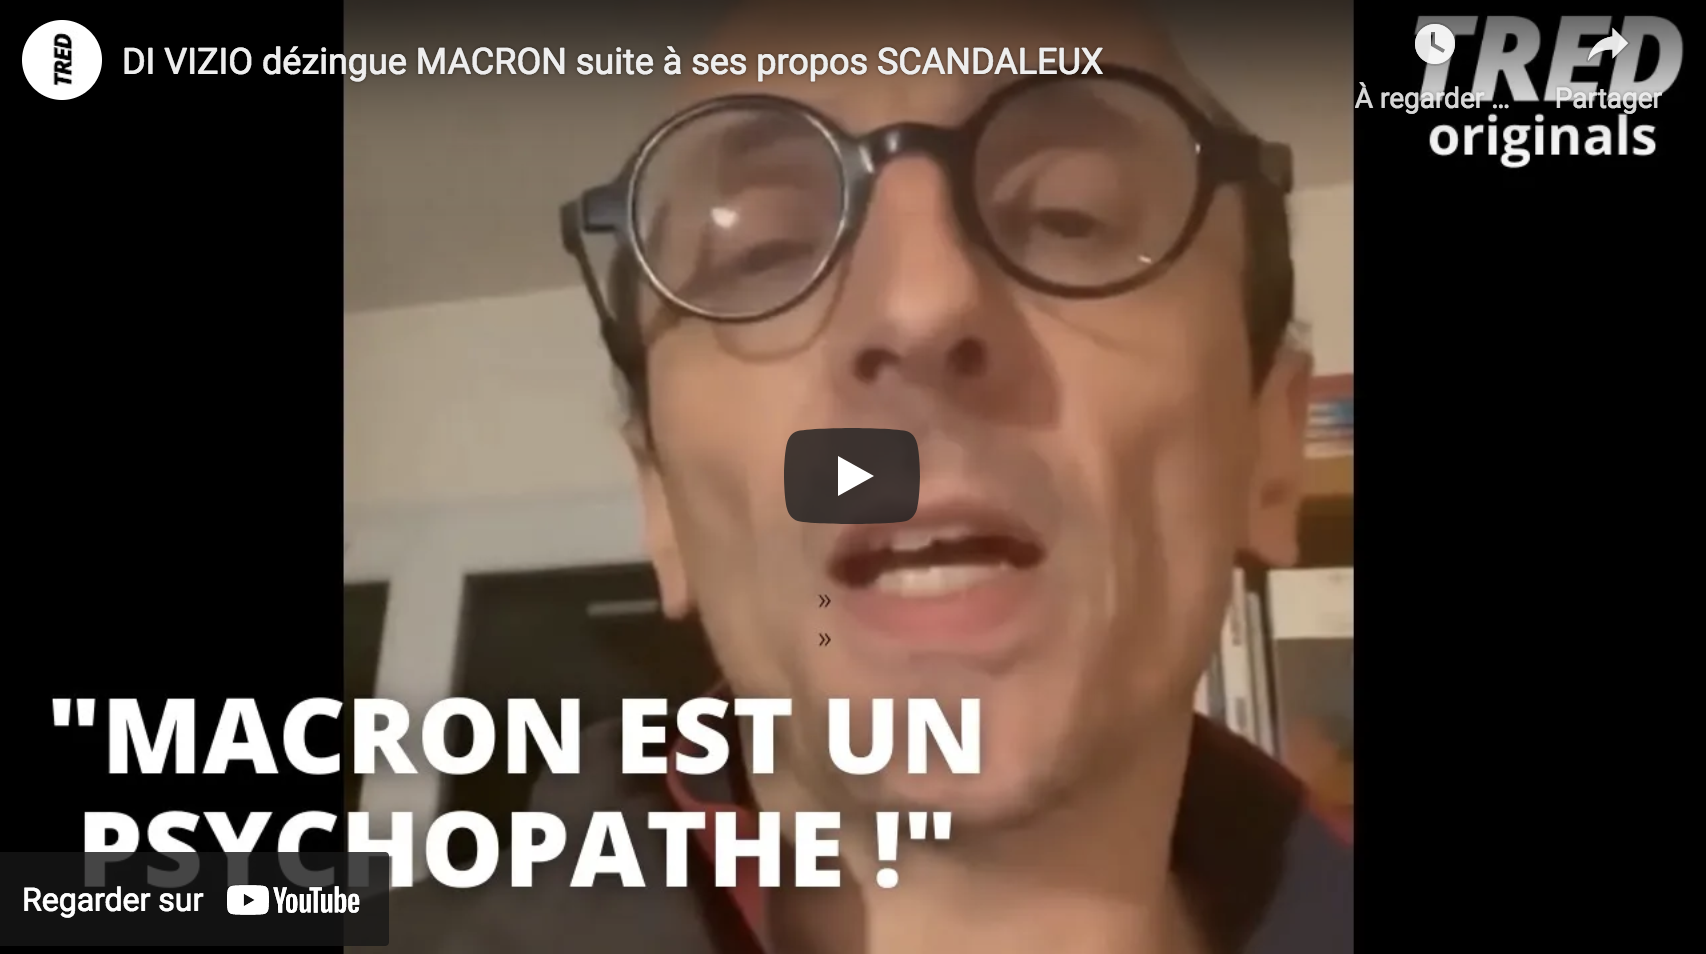 Fabrice Di Vizio dézingue Emmanuel Macron suite à ses propos scandaleux (VIDÉO)